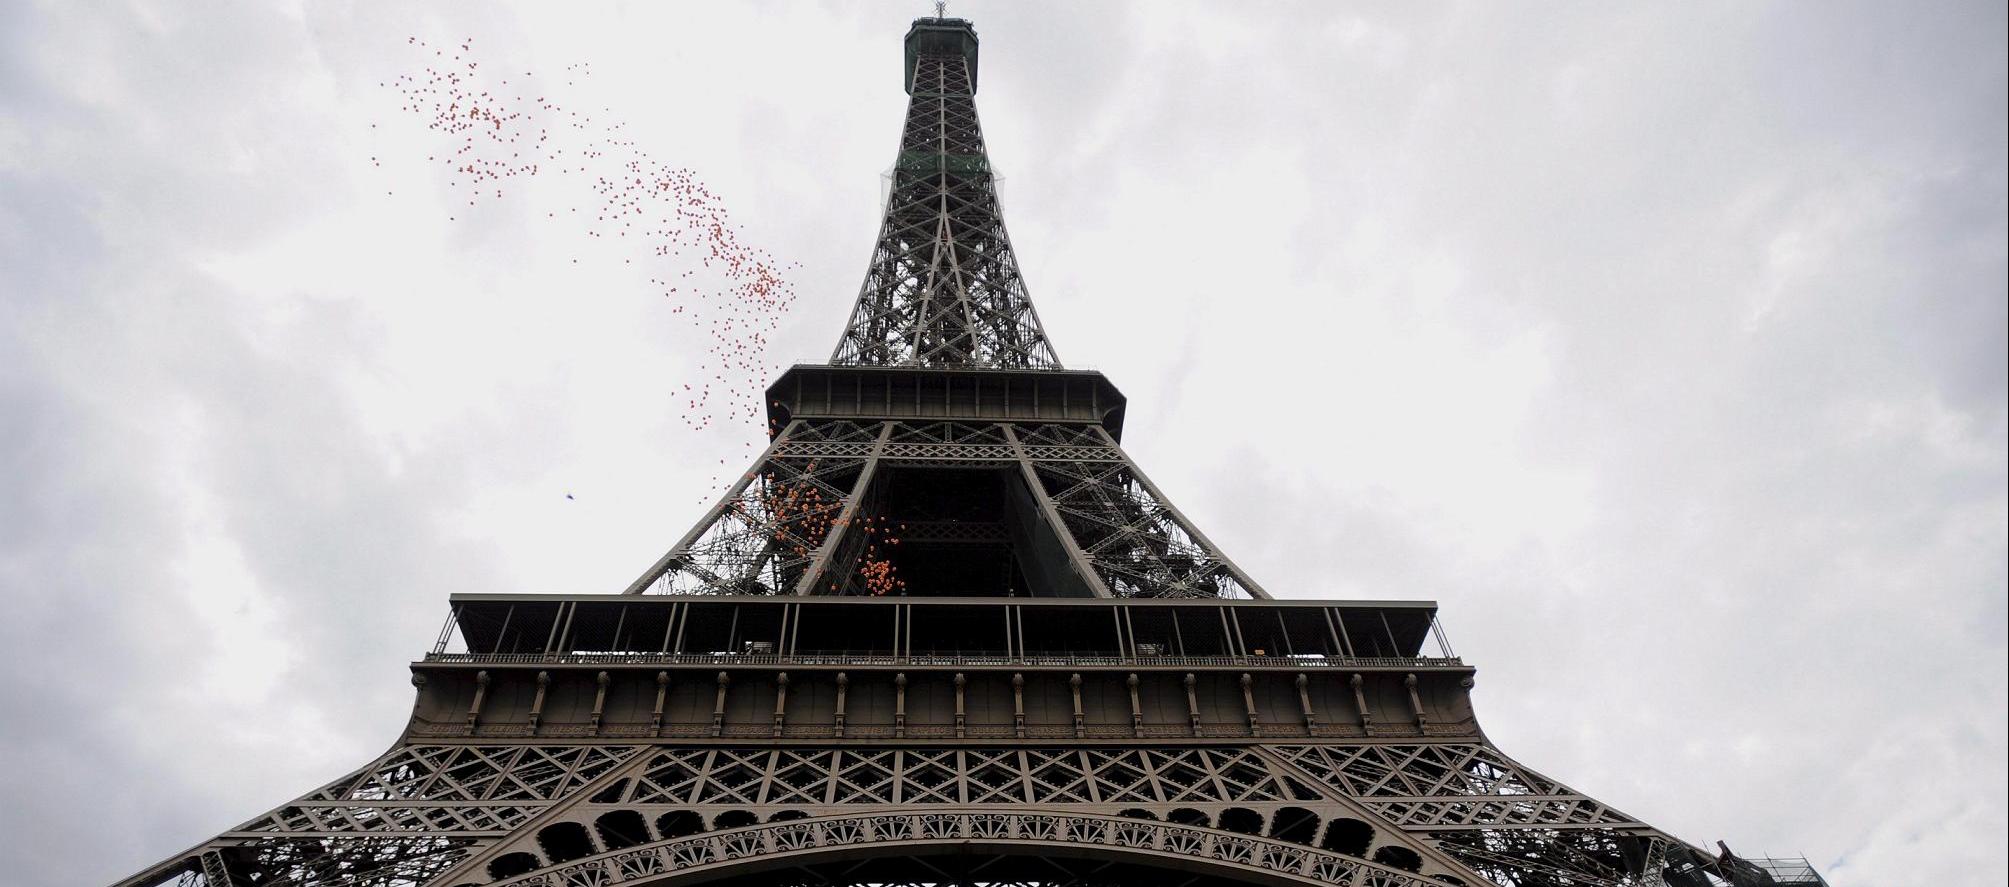 Imagen de referencia de la Torre Eiffel.